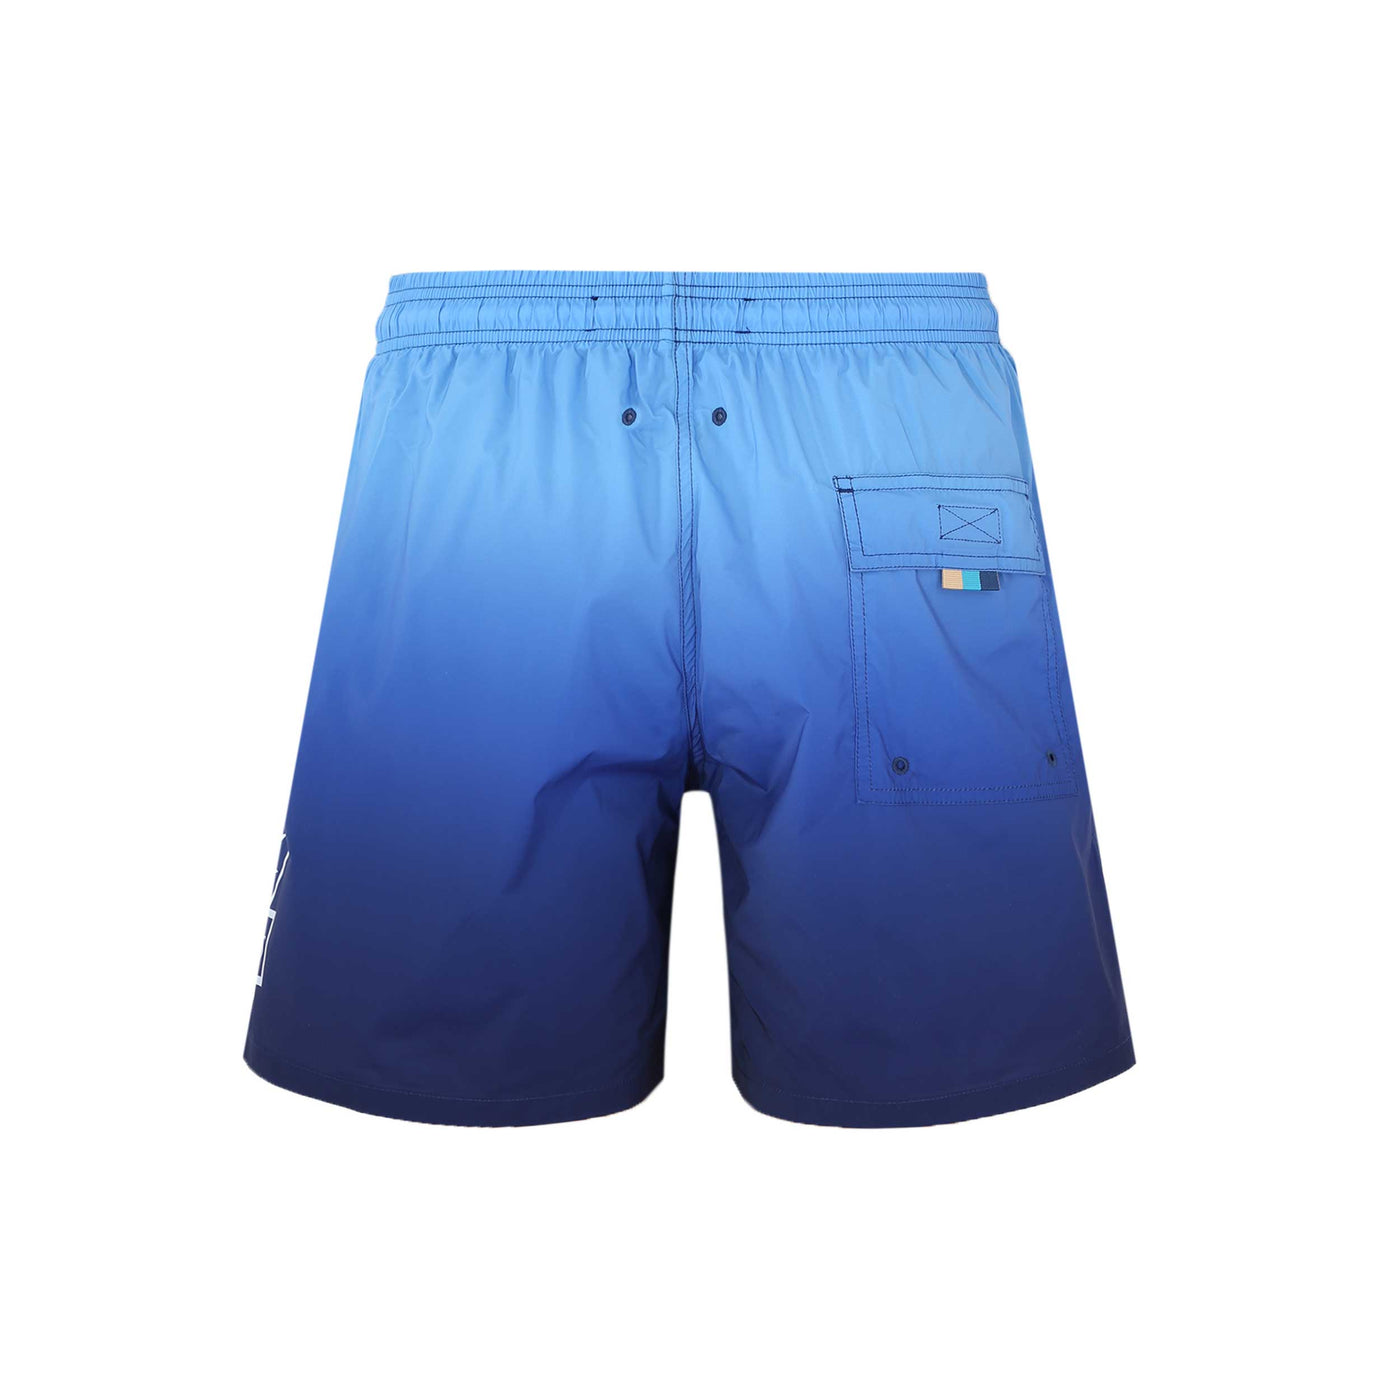 Sandbanks Moonlight Gradient Swim Shorts in Blue Back